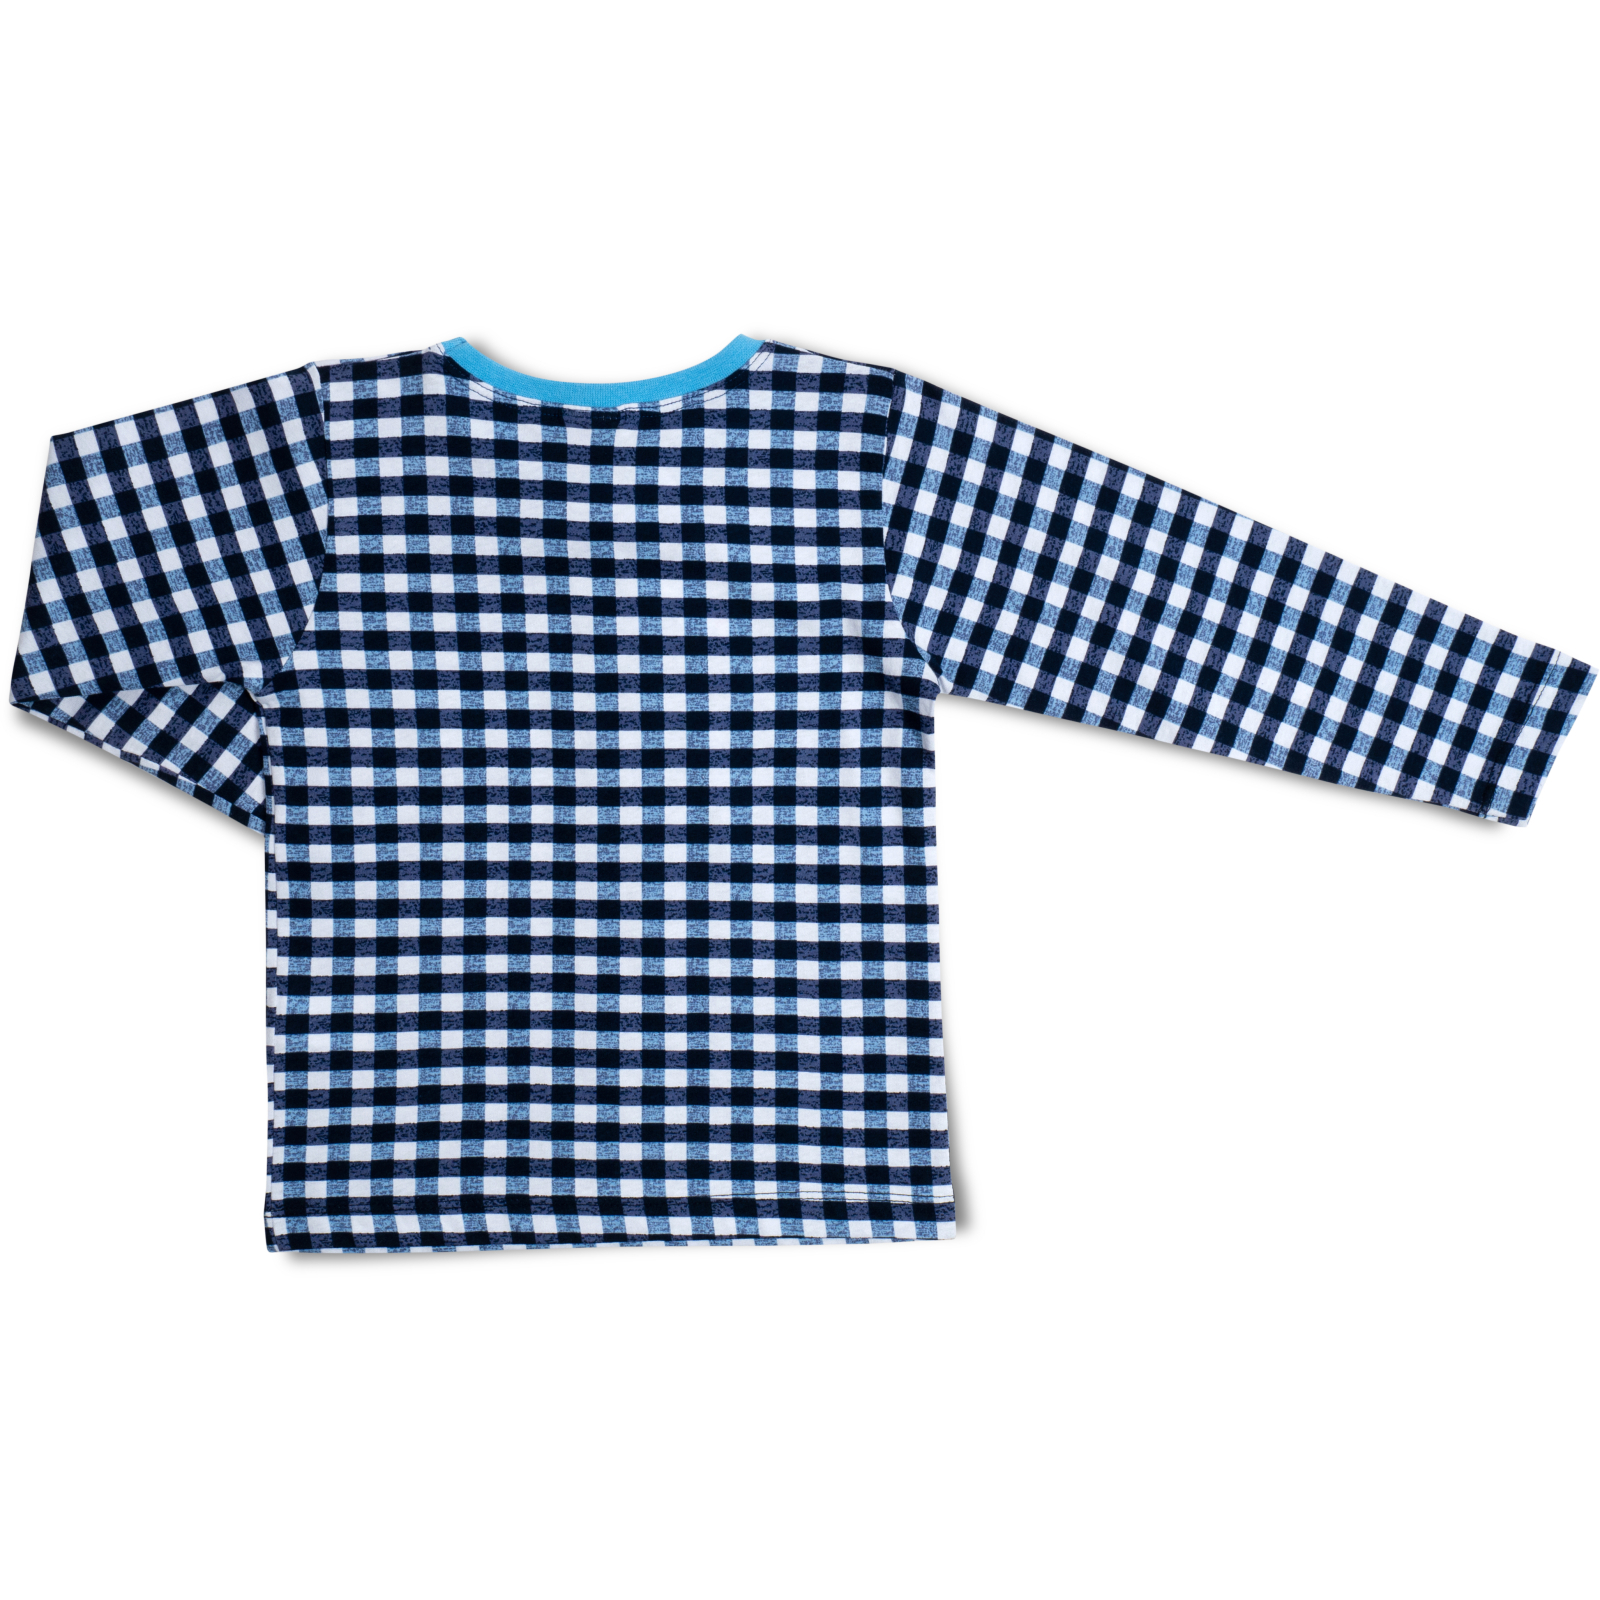 Пижама Breeze трикотажная (16030-128-blue) изображение 5